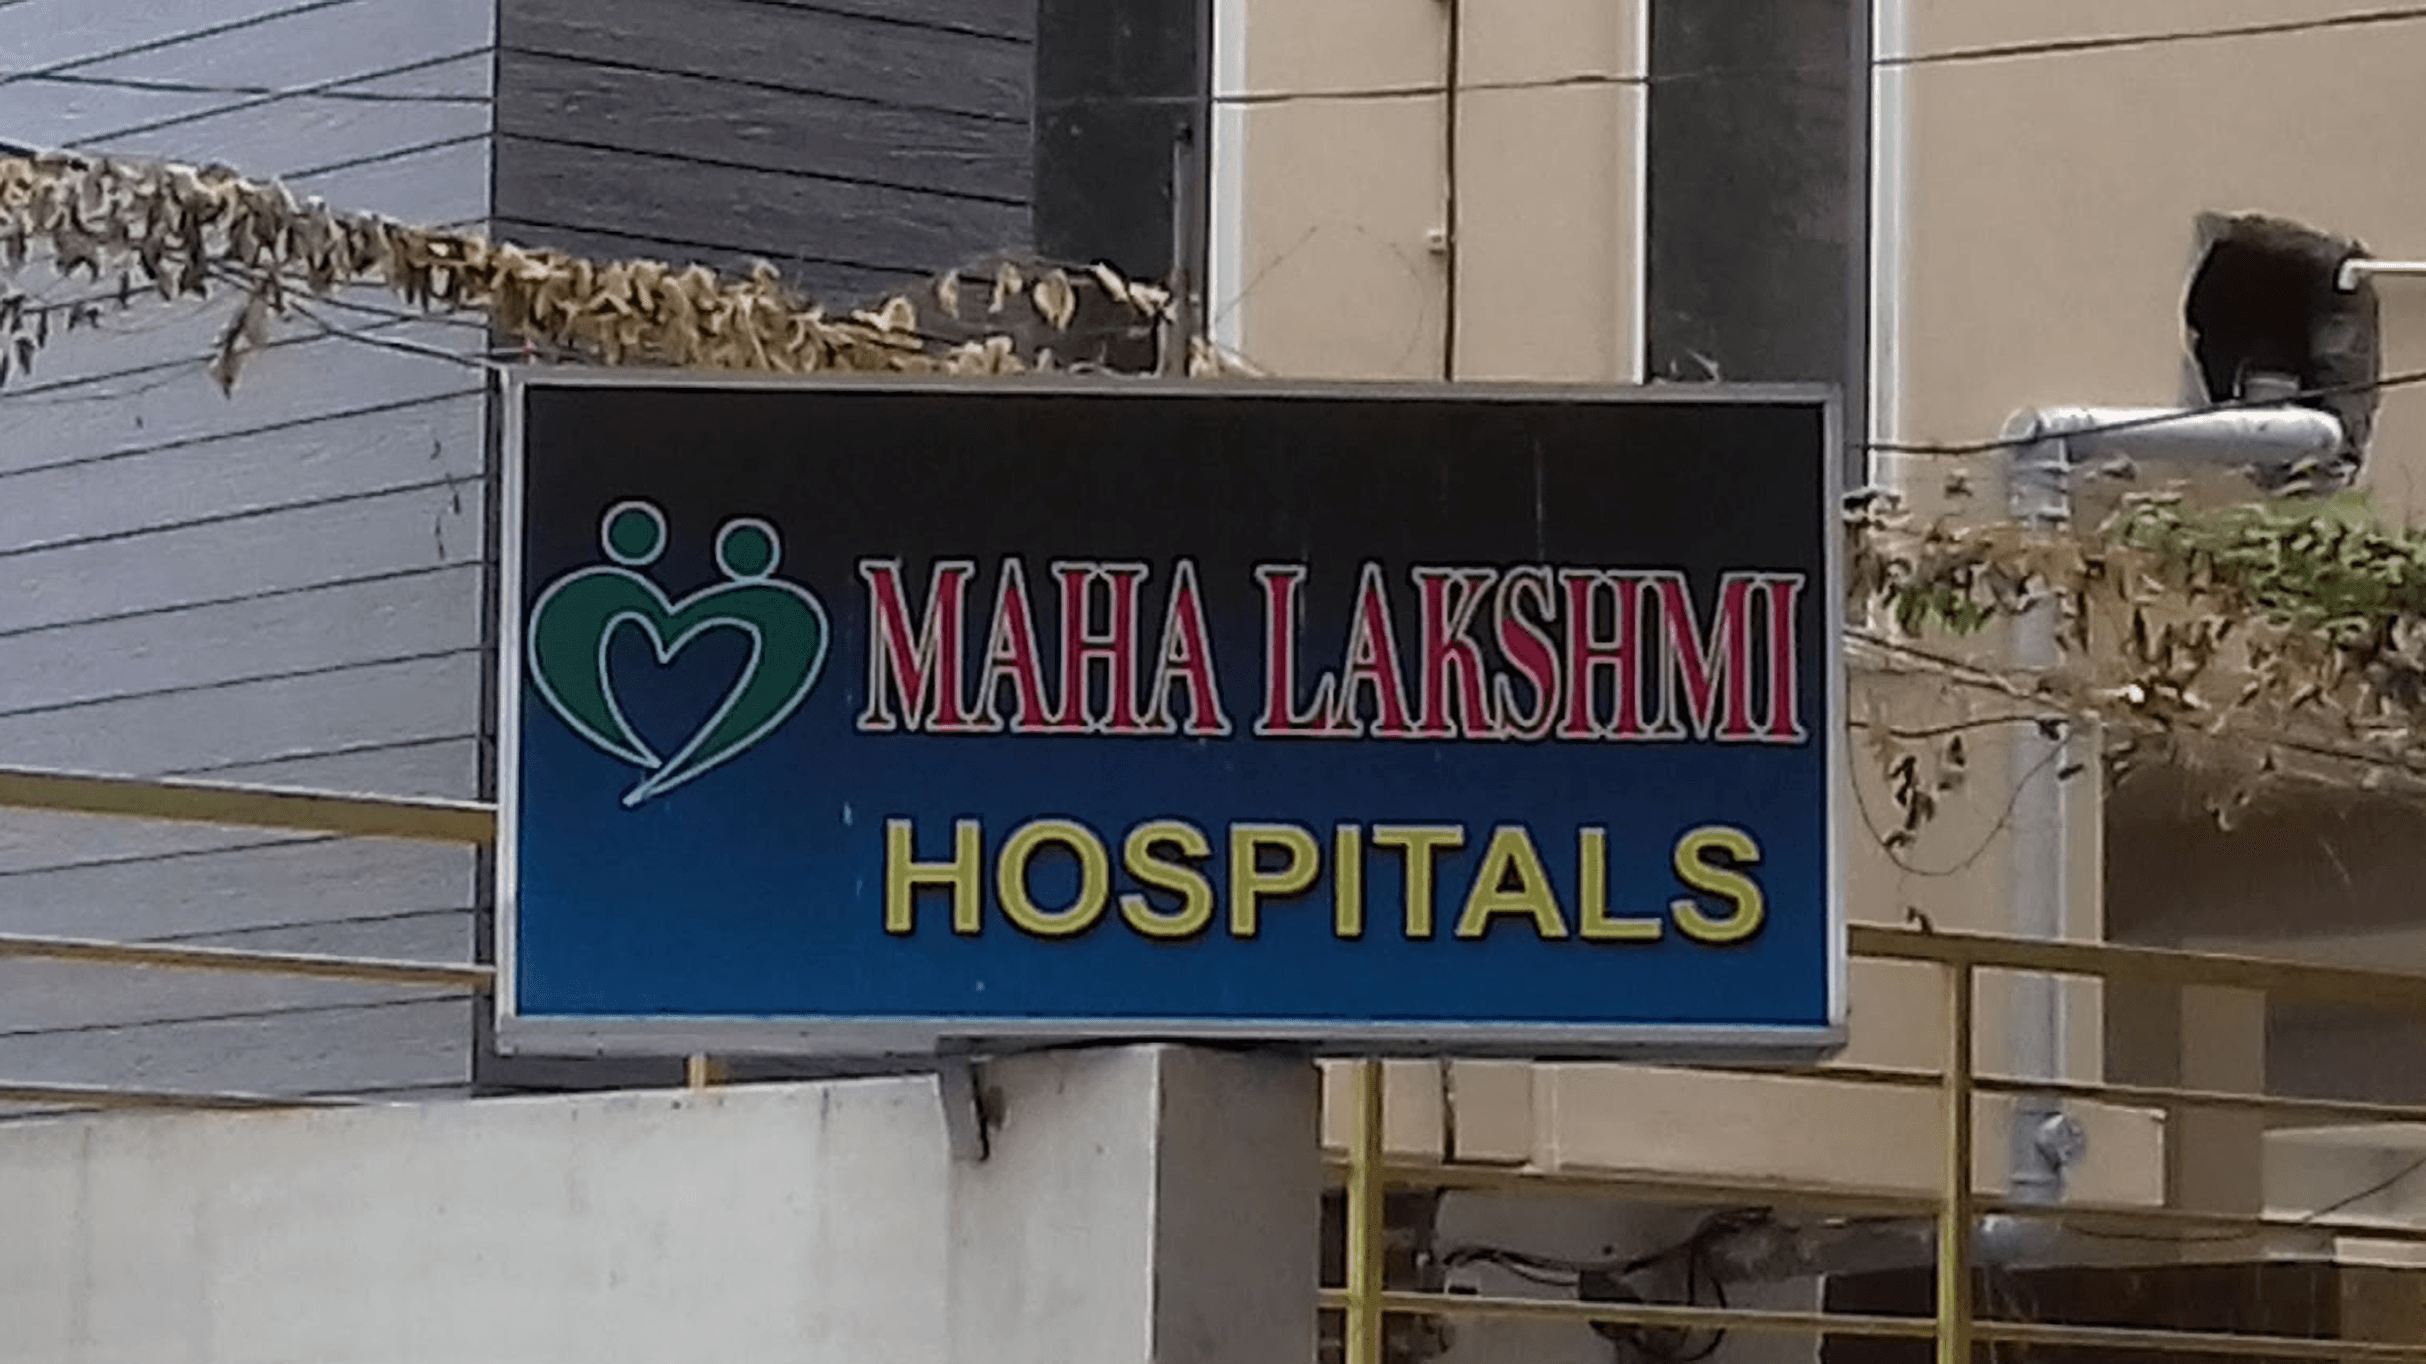 Maha Lakshmi Hospital